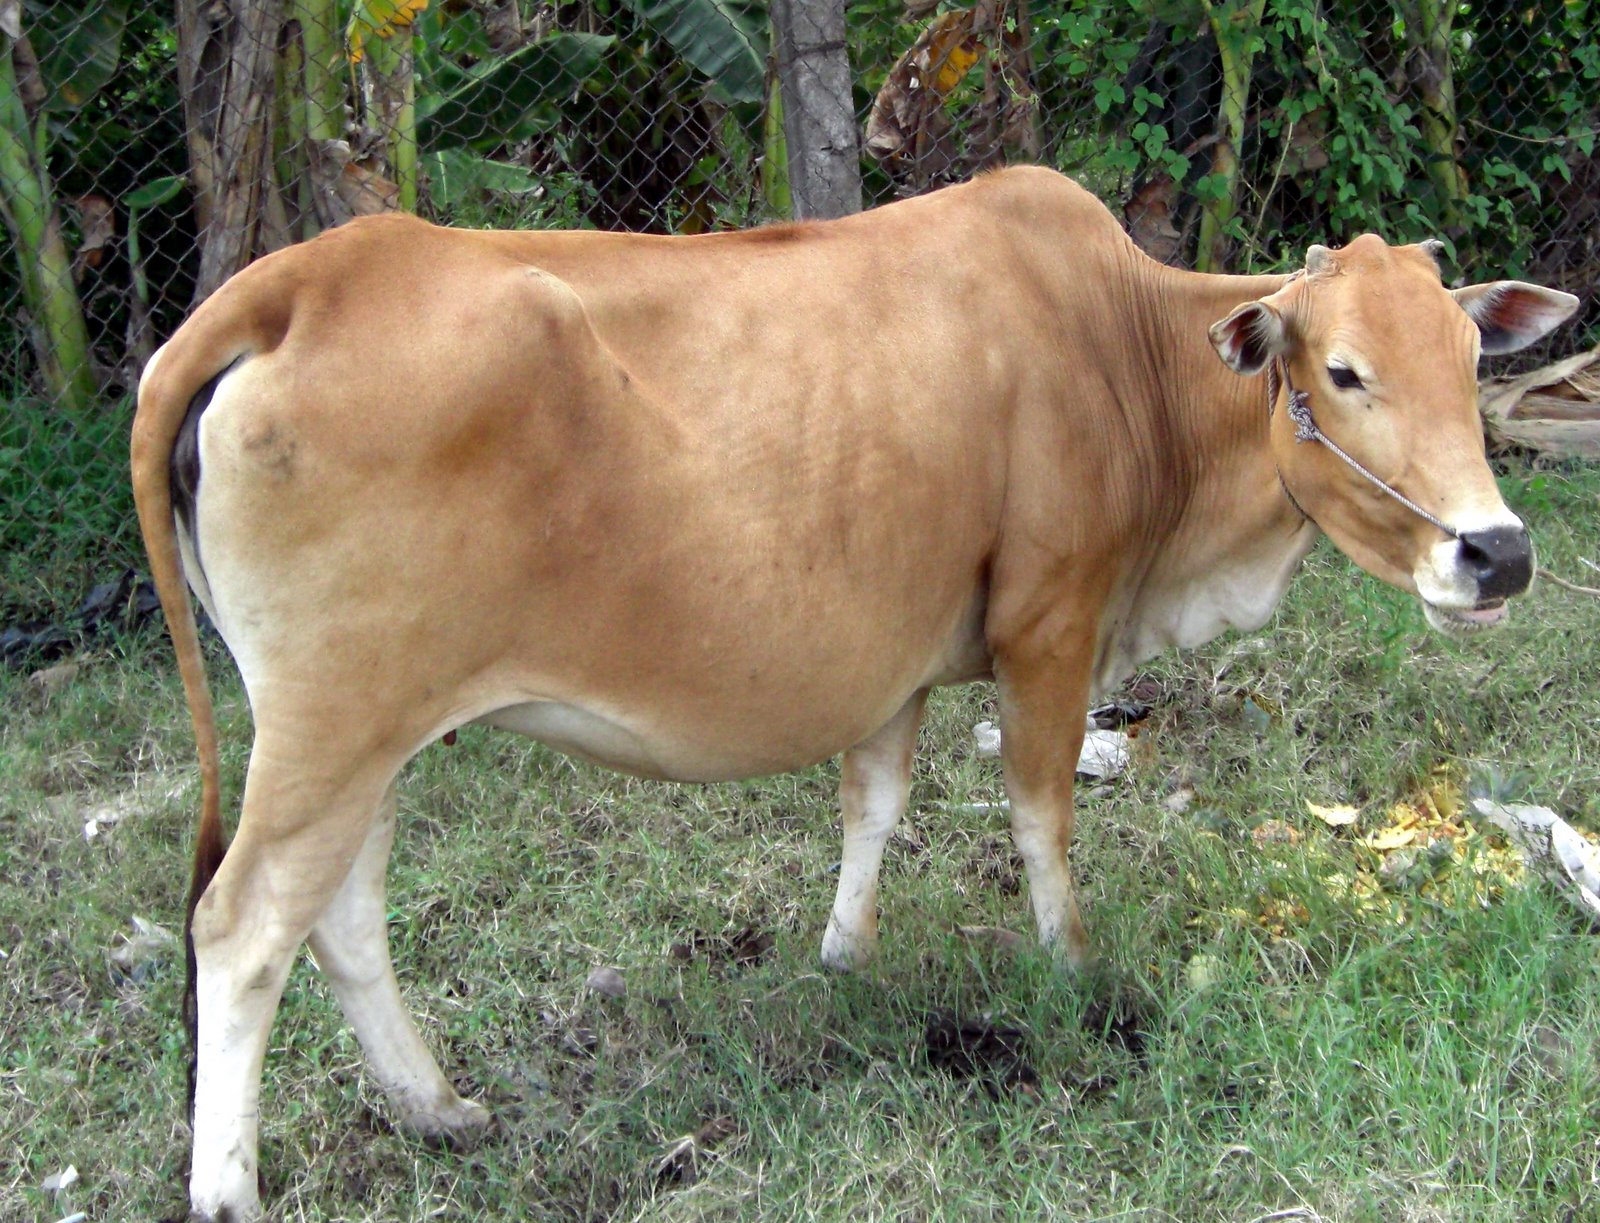 205015 hình ảnh về con bò sữa đẹp ấn tượng nhất năm 2019  Mua bán hình  ảnh shutterstock giá rẻ chỉ từ 3000 đ trong 2 phút